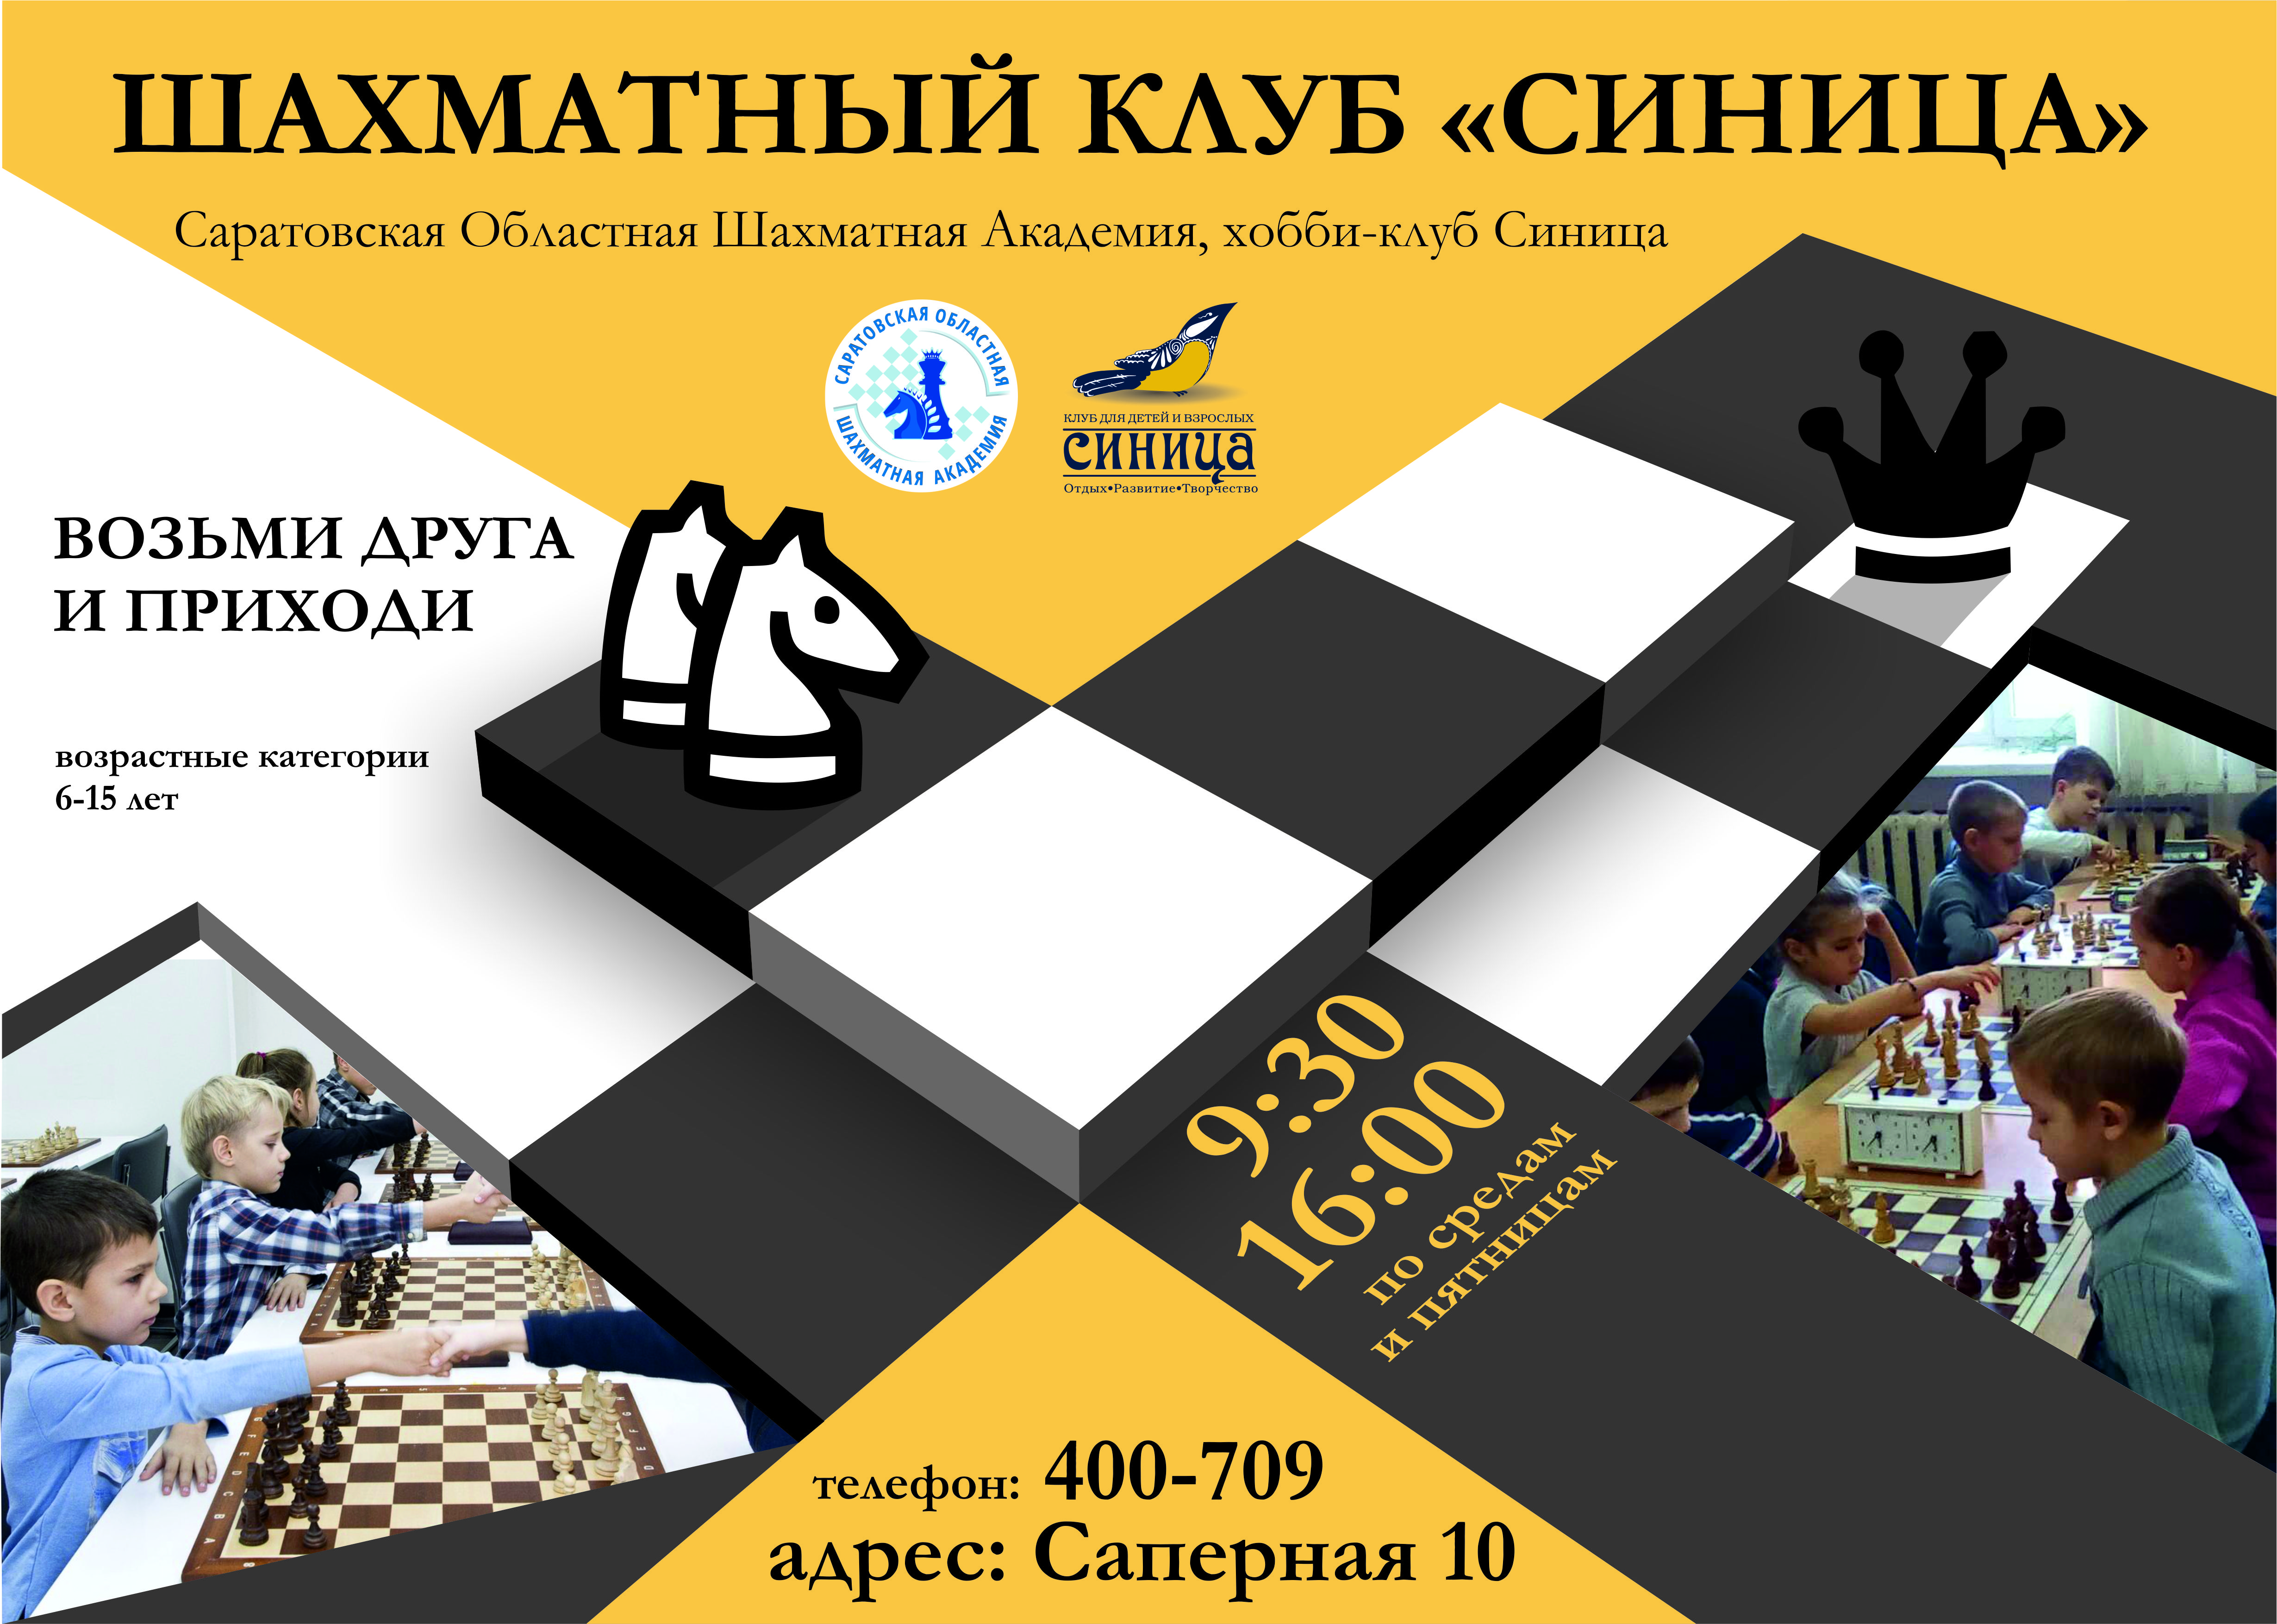 Шахматный клуб Синица приглашает на занятия